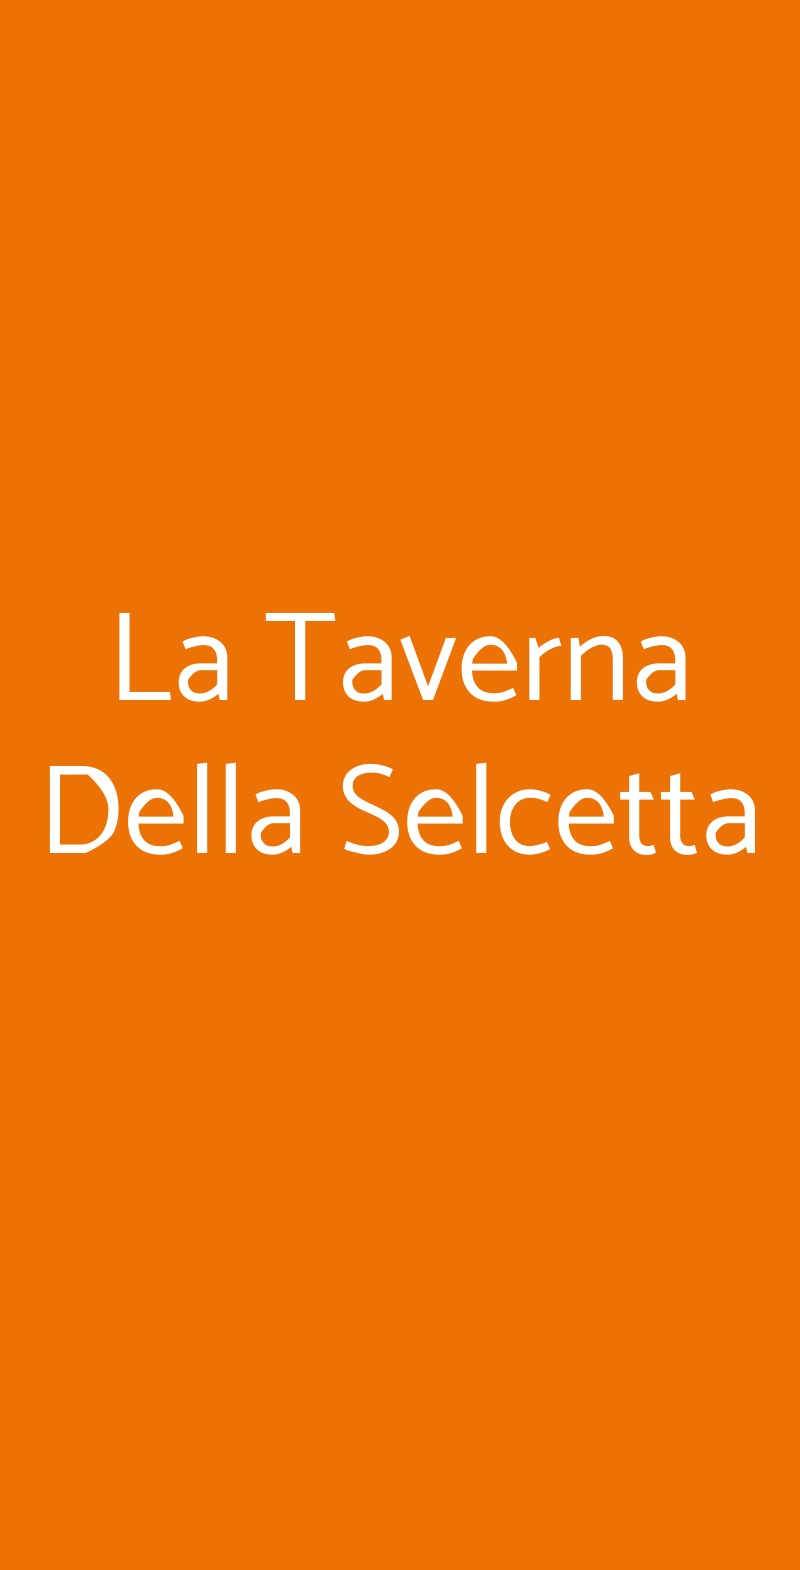 La Taverna Della Selcetta Roma menù 1 pagina